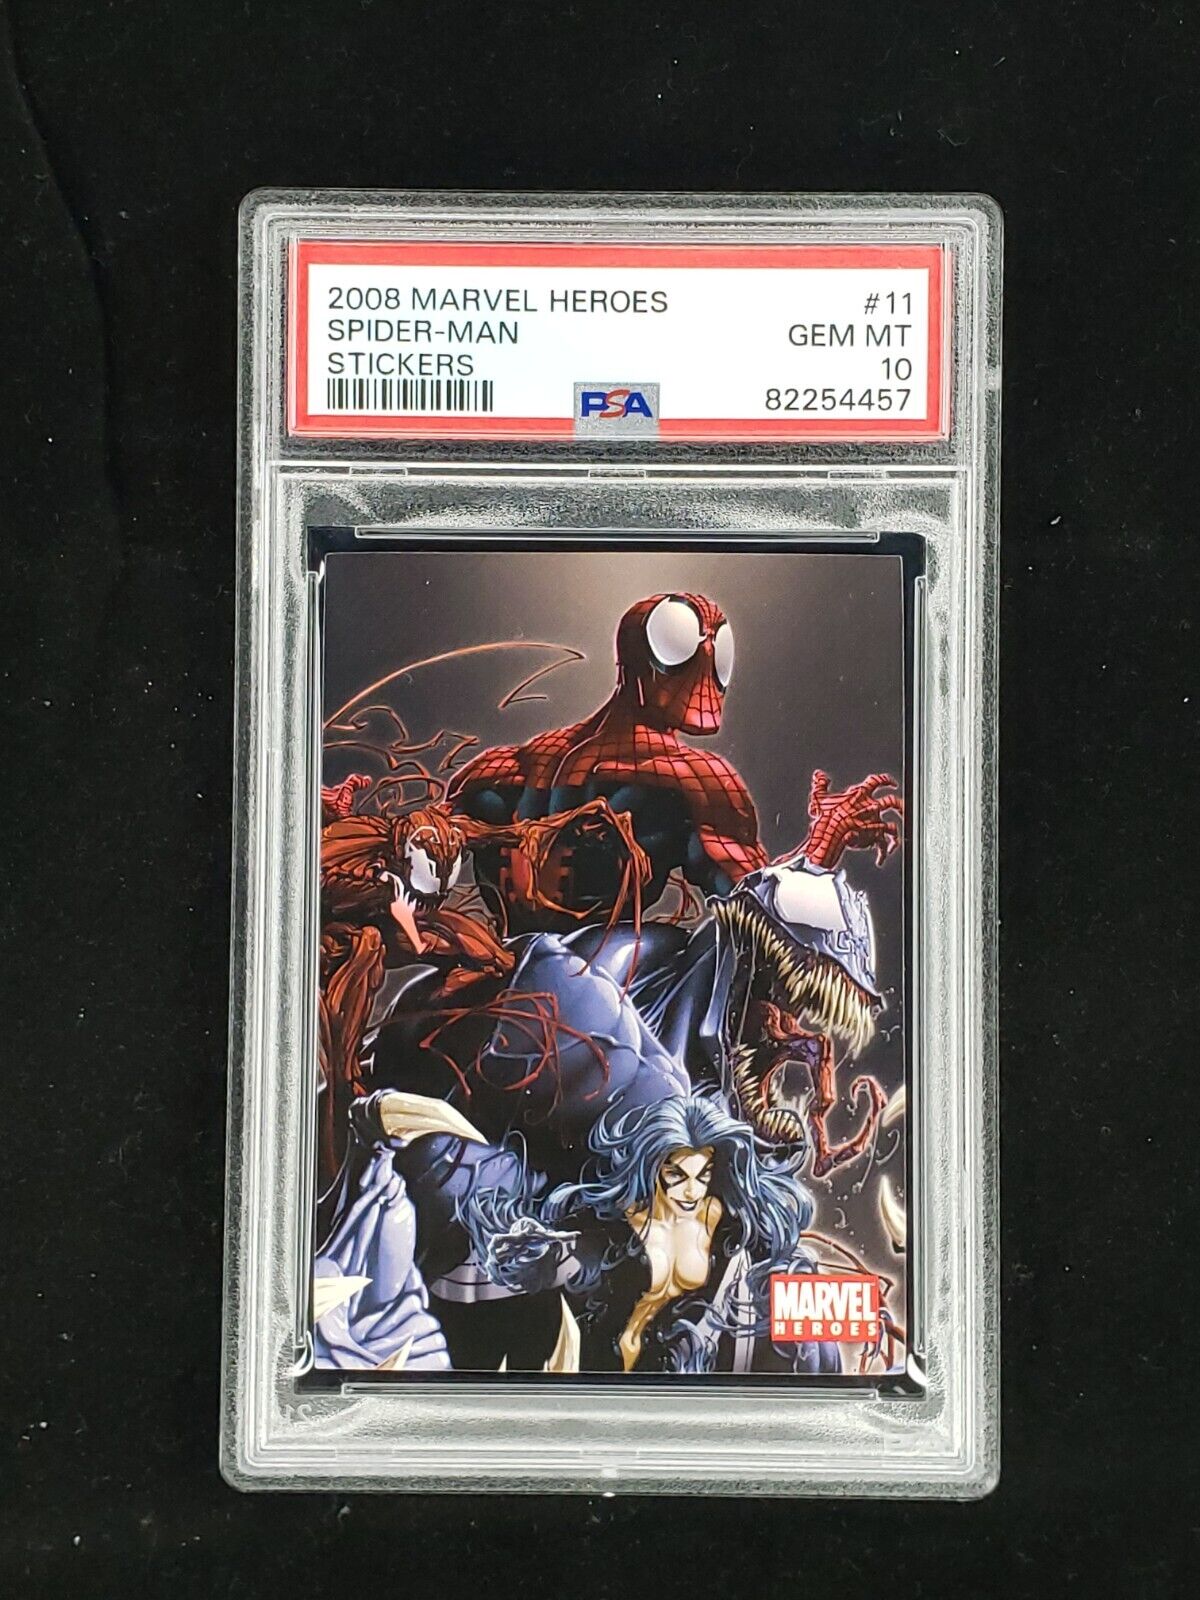 2008 Marvel Heroes SPIDER-MAN Stickers #11 Venom, Carnage Clayton Crain PSA 10